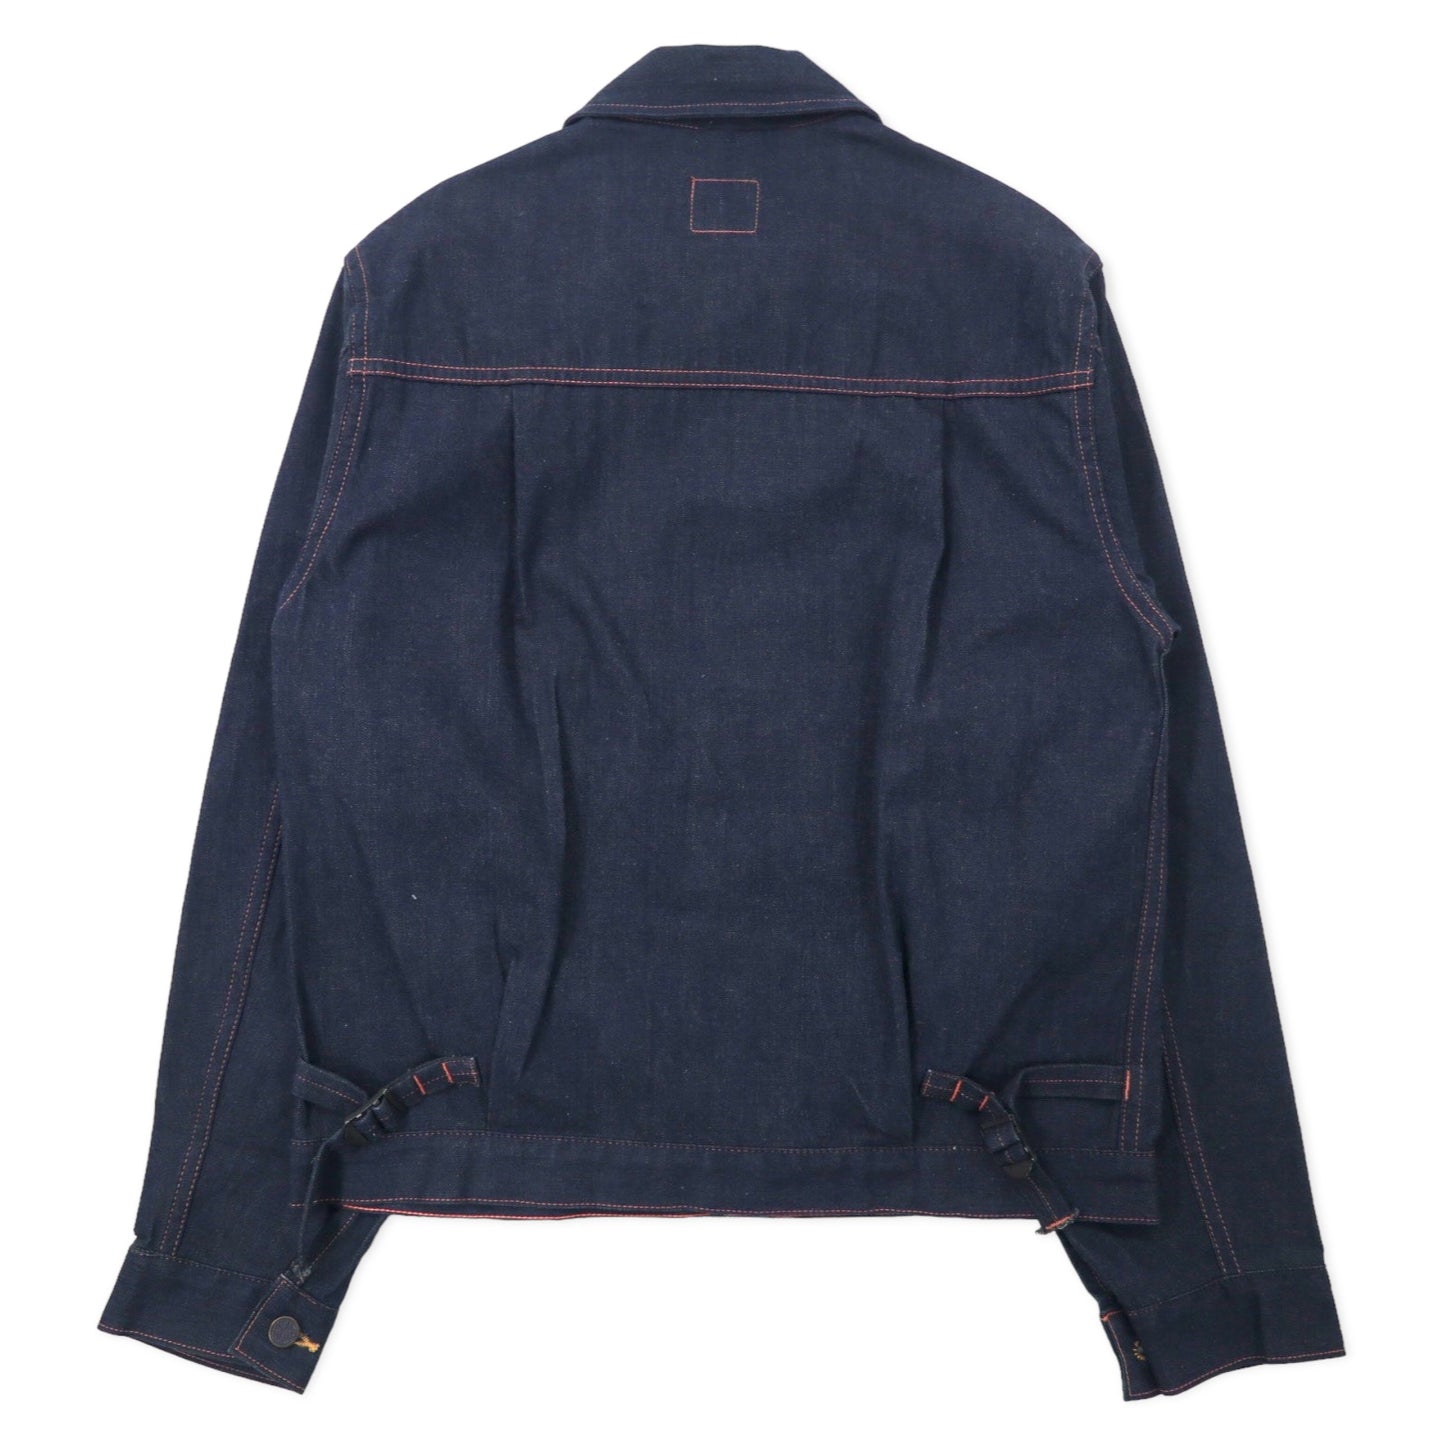 HEADLIGHT ( 東洋エンタープライズ ) デニムジャケット Gジャン M ブルー 濃紺 UNION MADE セルビッチ HD11207 日本製